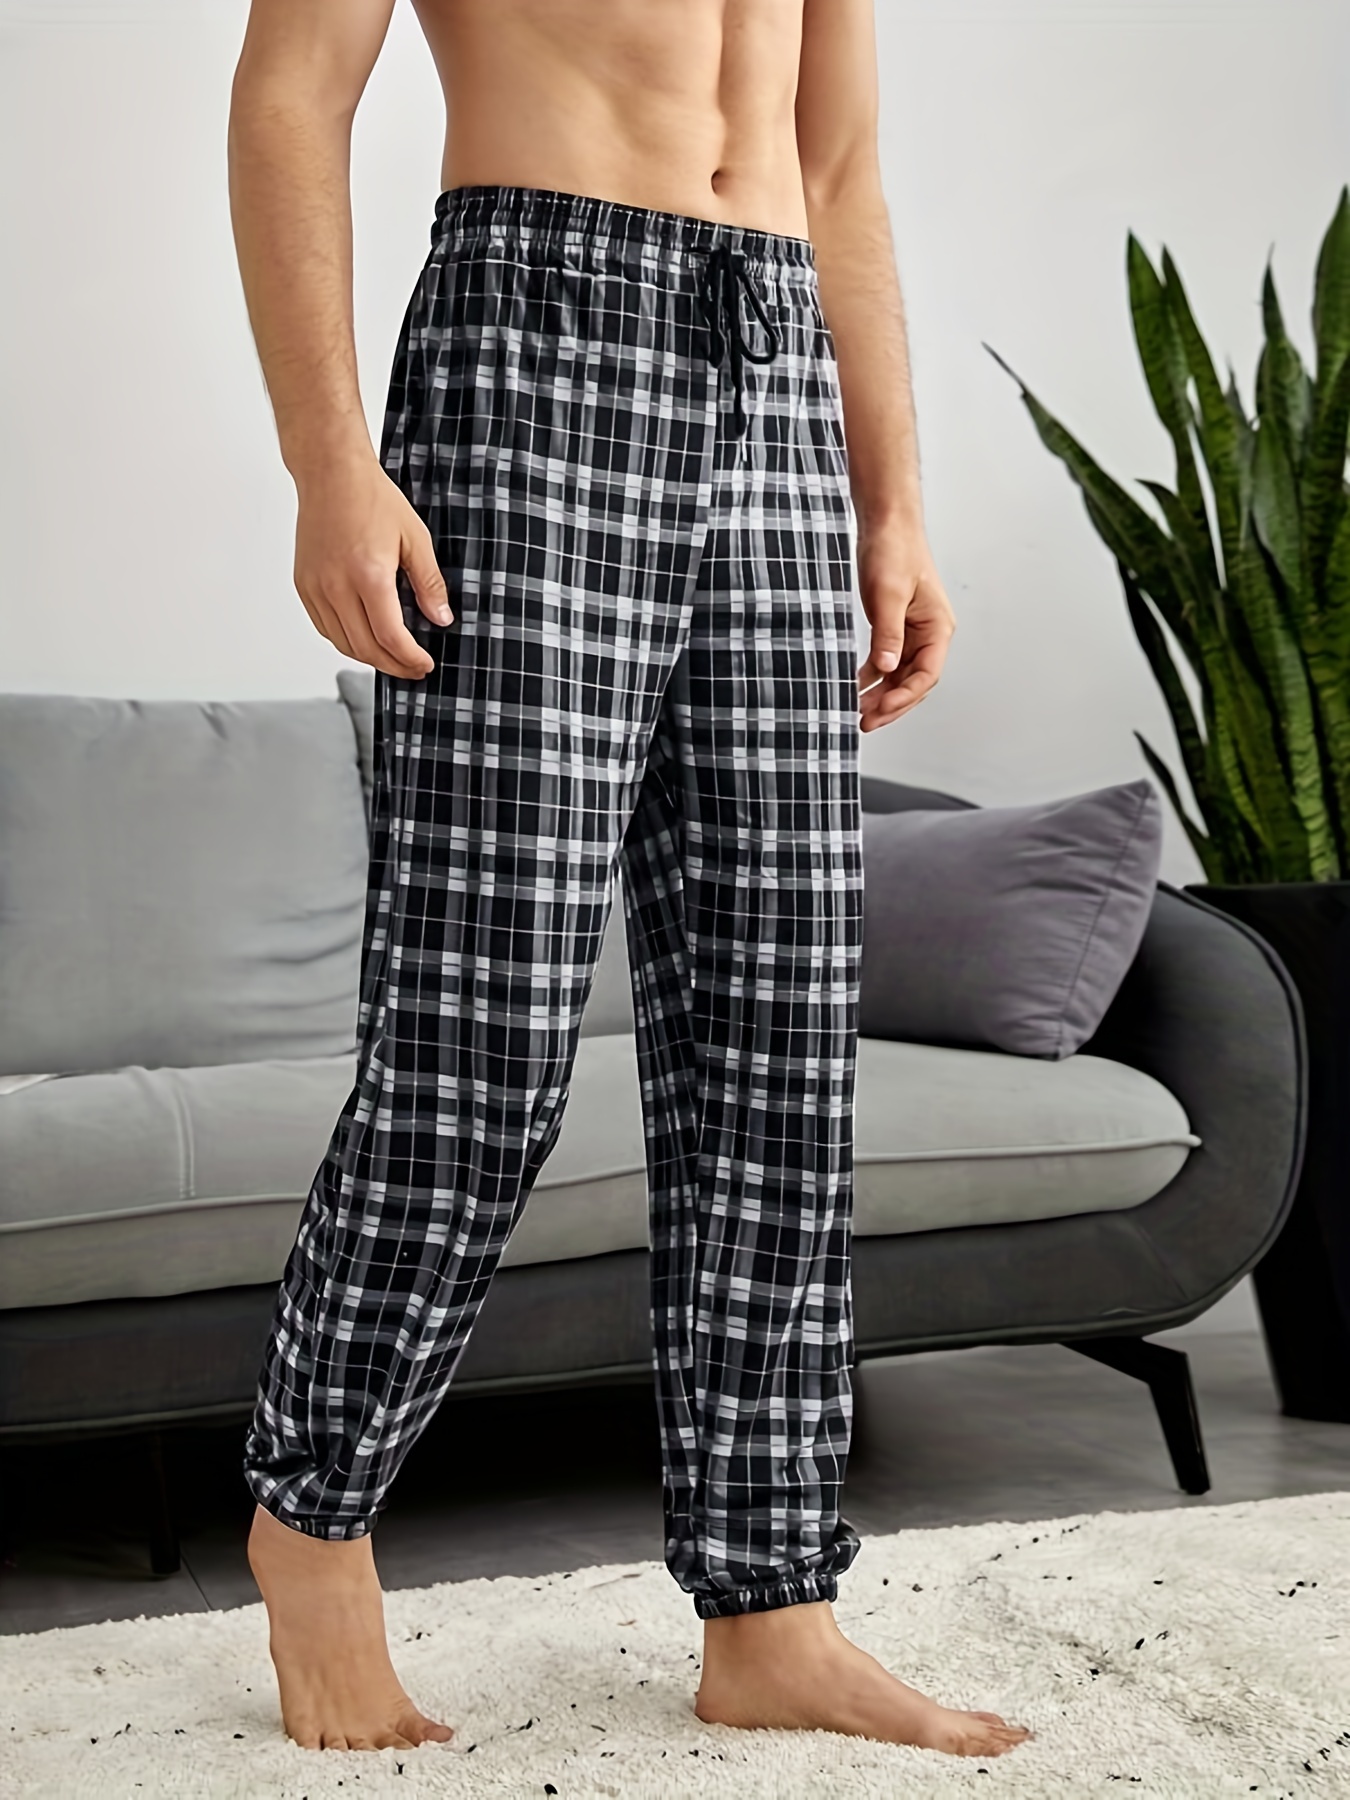 Green Checkered Print Comfortable Soft Lounge Pajama Pants